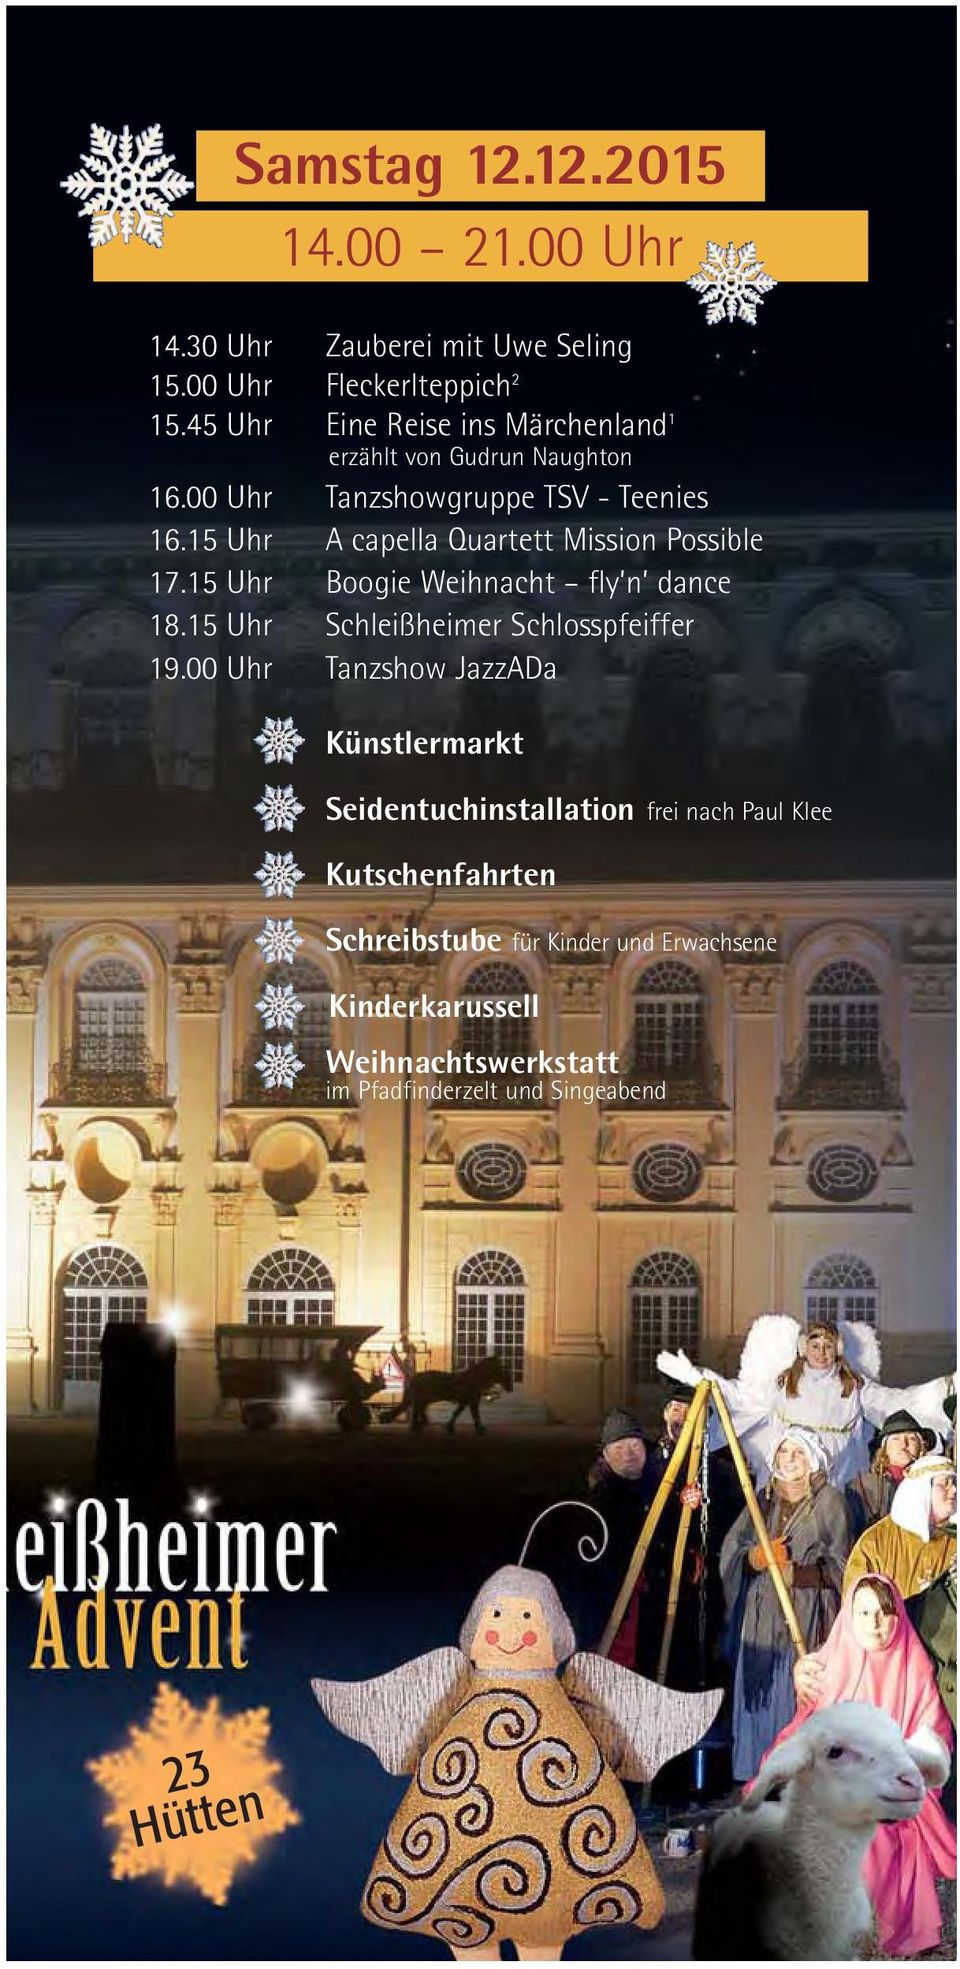 15 Uhr A capella Quartett Mission Possible 17.15 Uhr Boogie Weihnacht fly n dance 18.15 Uhr Schleißheimer Schlosspfeiffer 19.